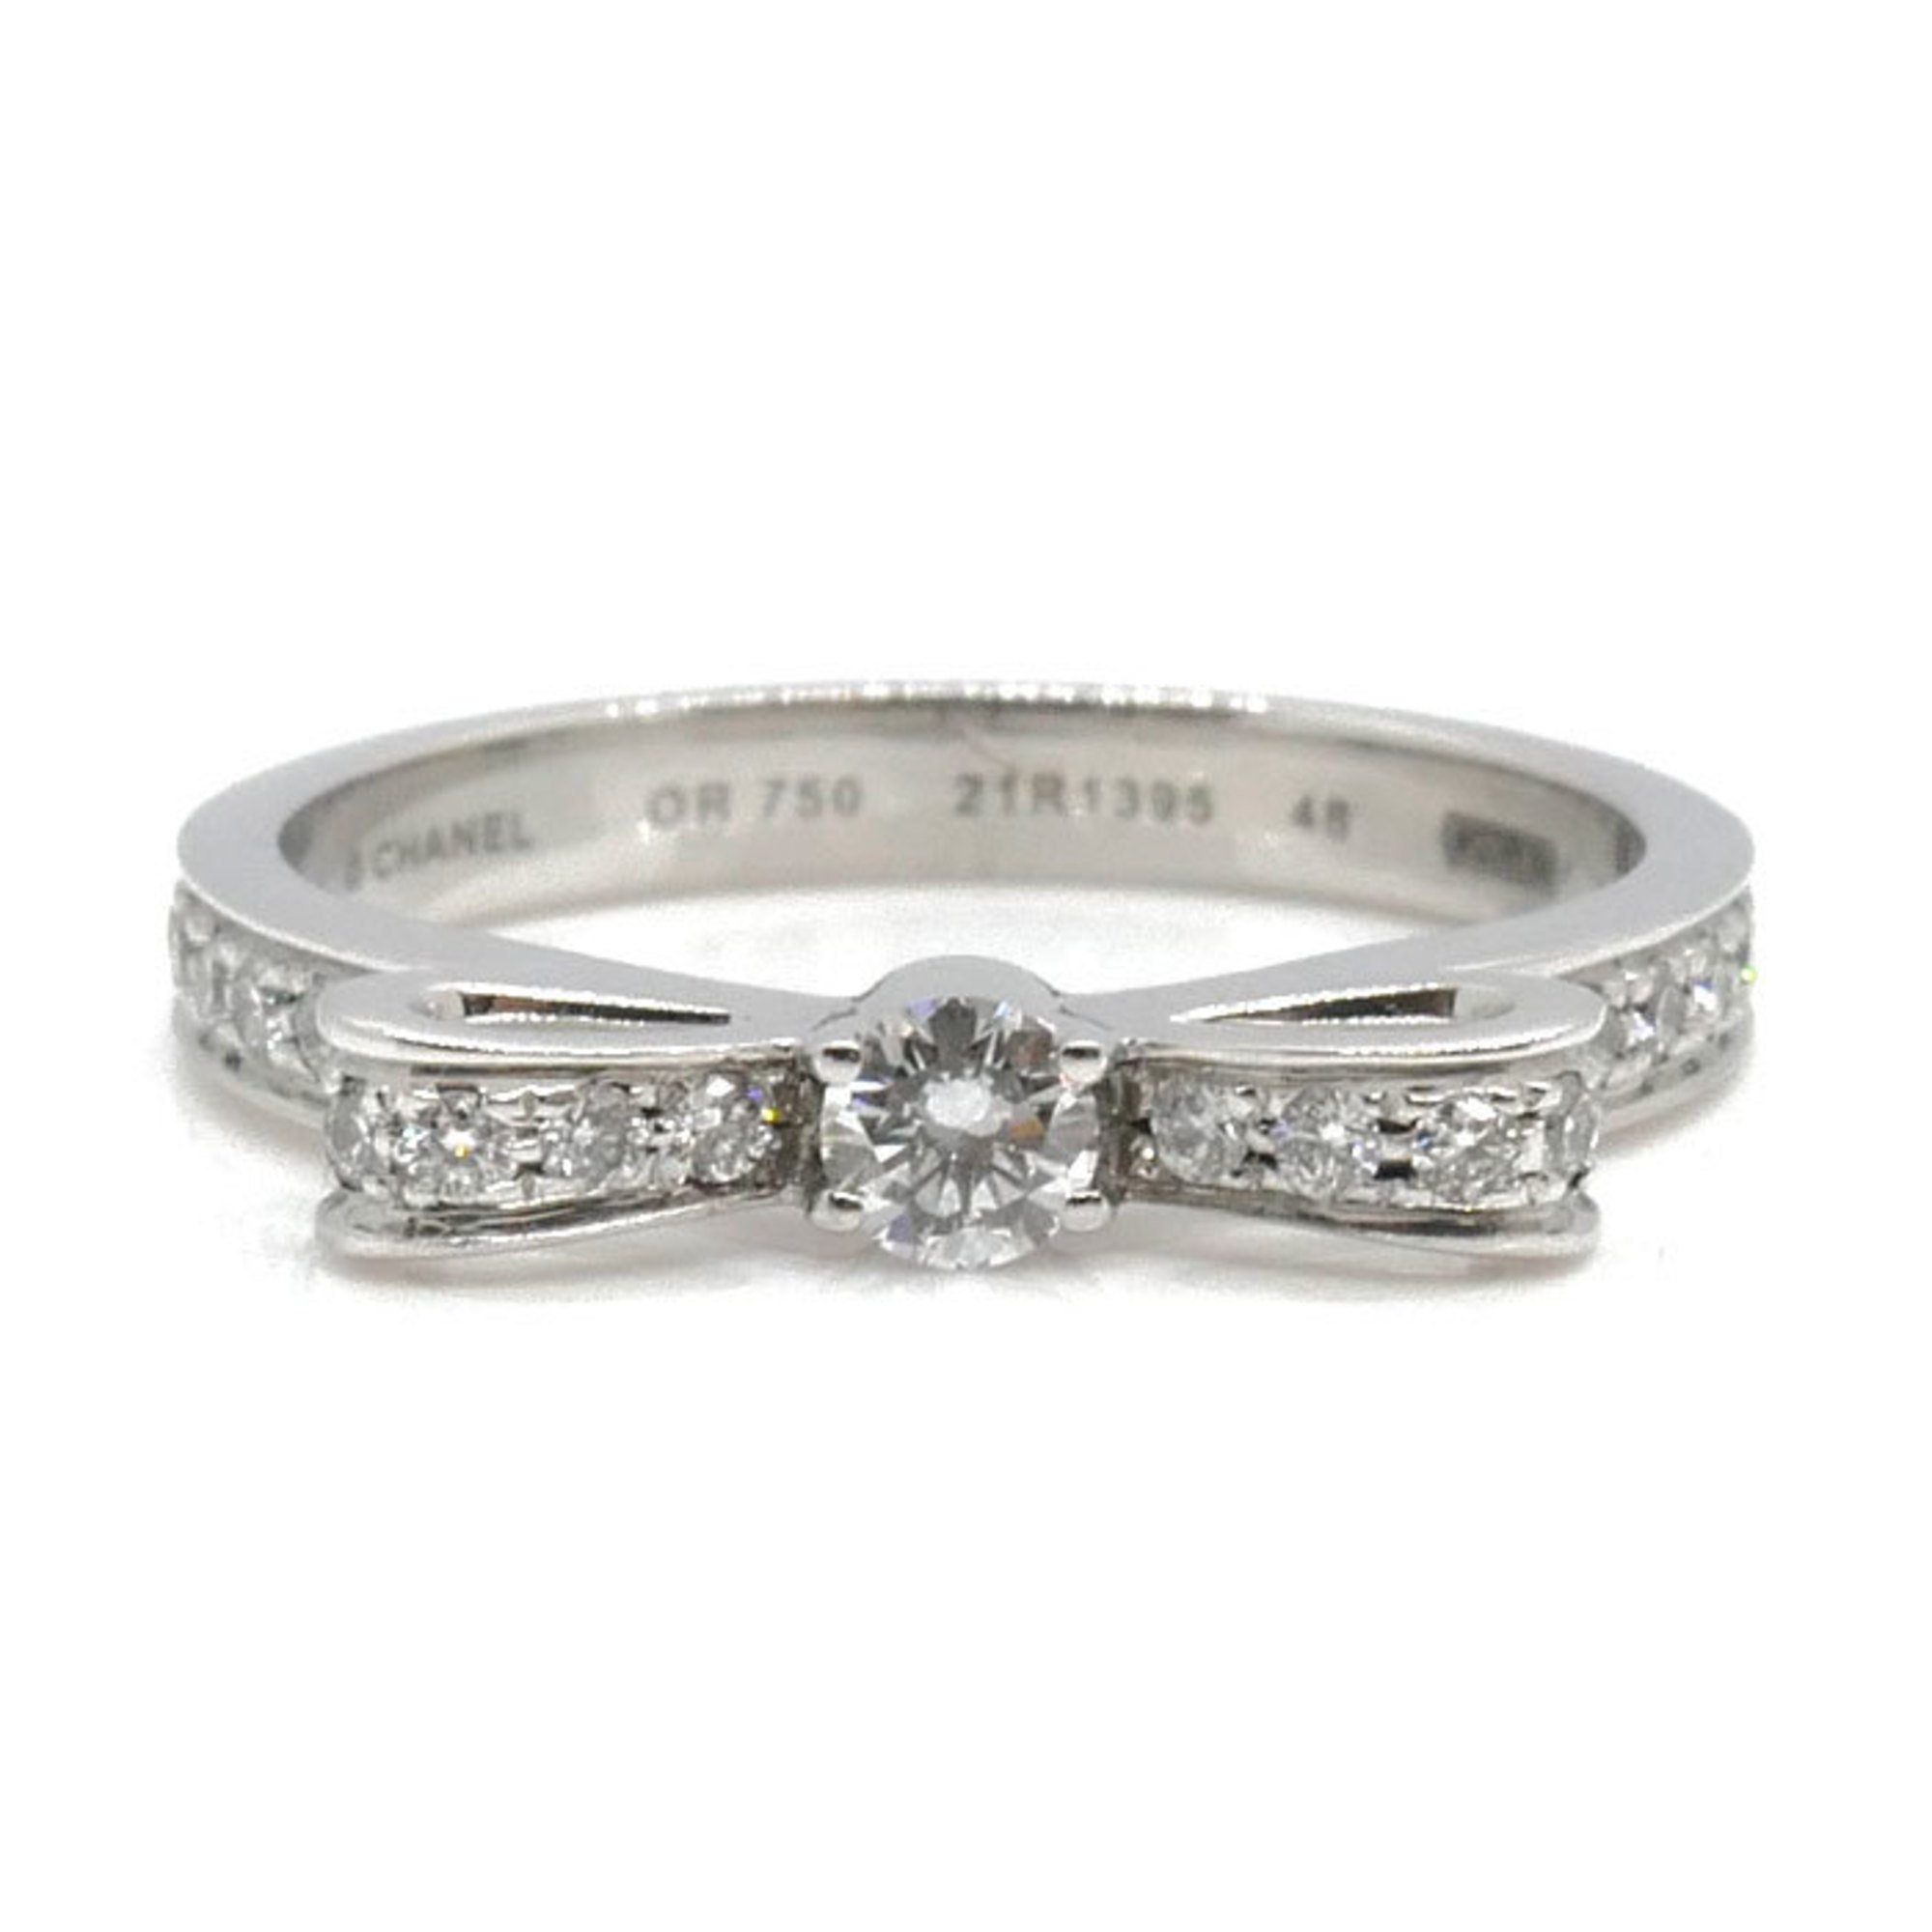 CHANEL K18WG White Gold 1932 Ruban de Chanel Ring J3412 Diamond Size 7.5 48 3.0g Women's